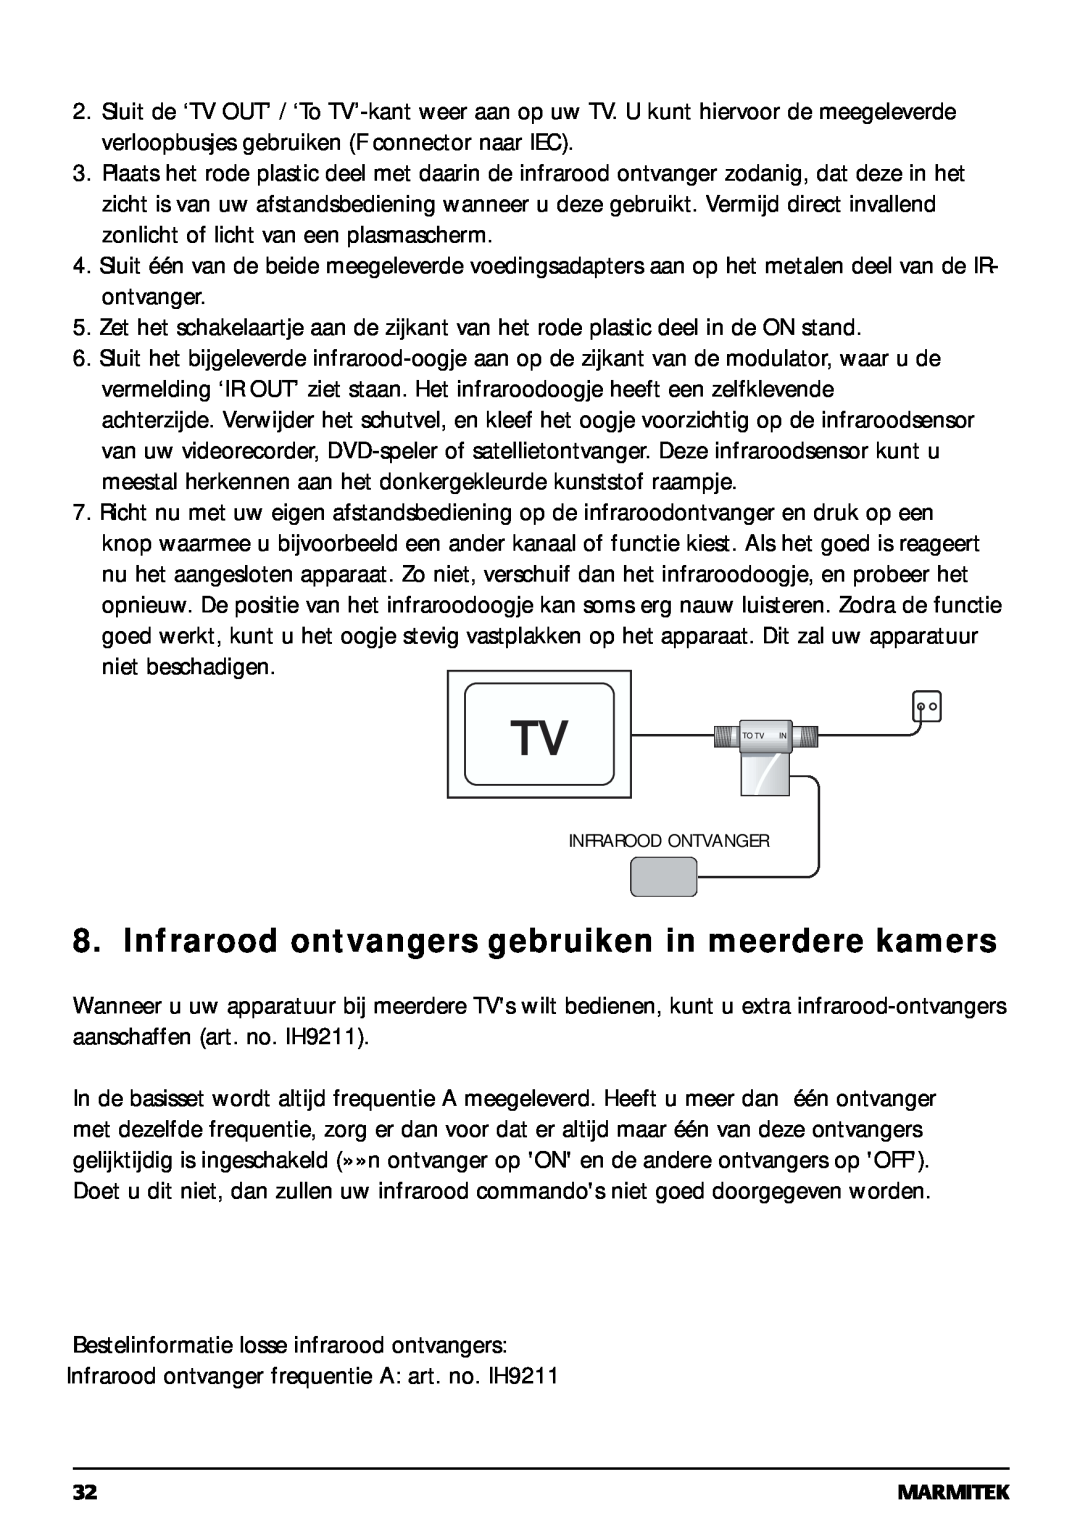 Marmitek 20068 / 300704 operating instructions Infrarood ontvangers gebruiken in meerdere kamers 